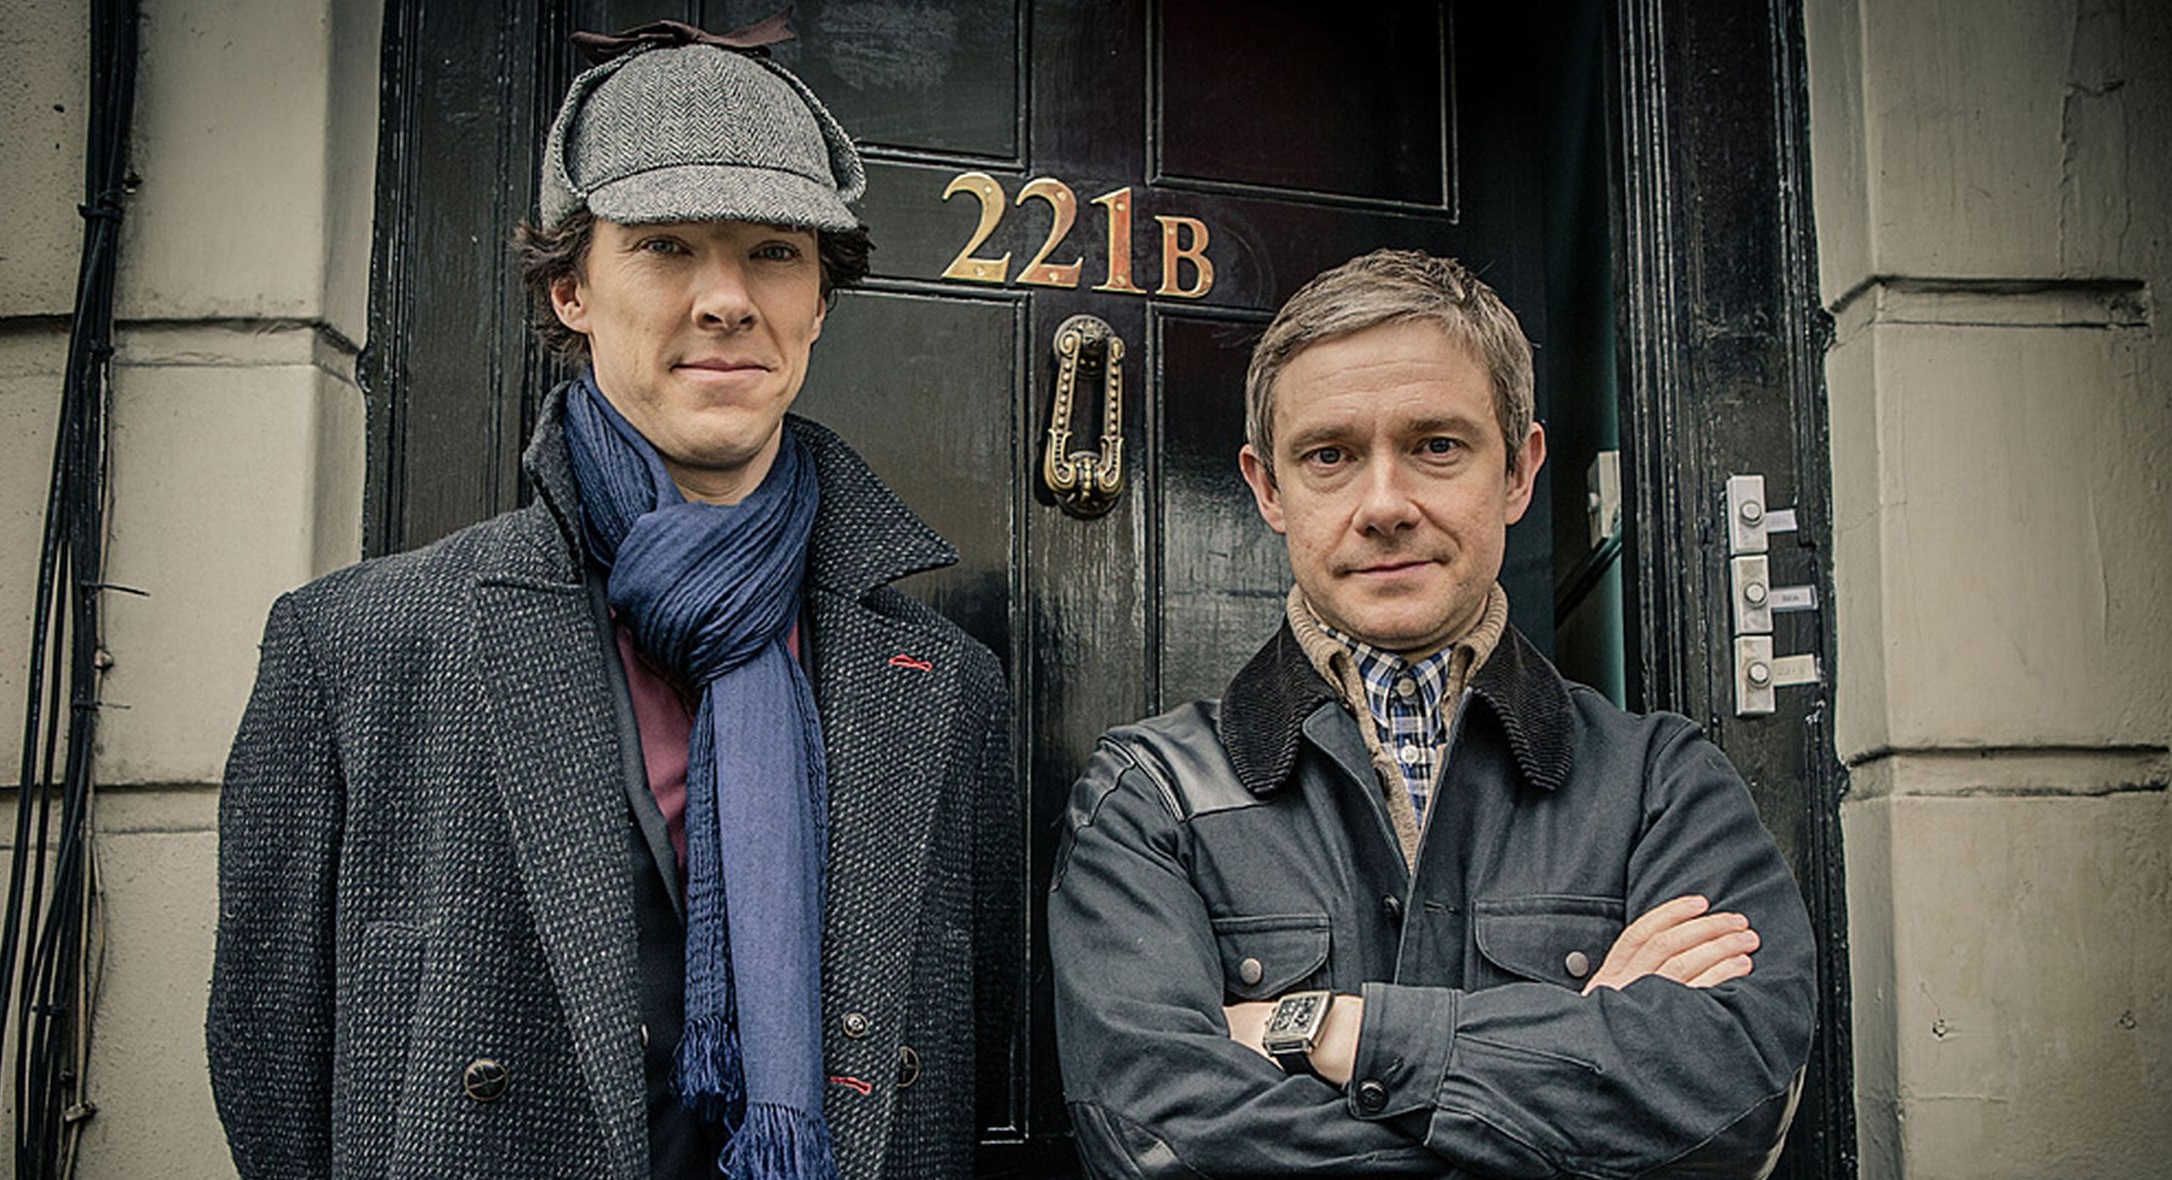 Résultat d’images pour Sherlock holmes 2017 BBC